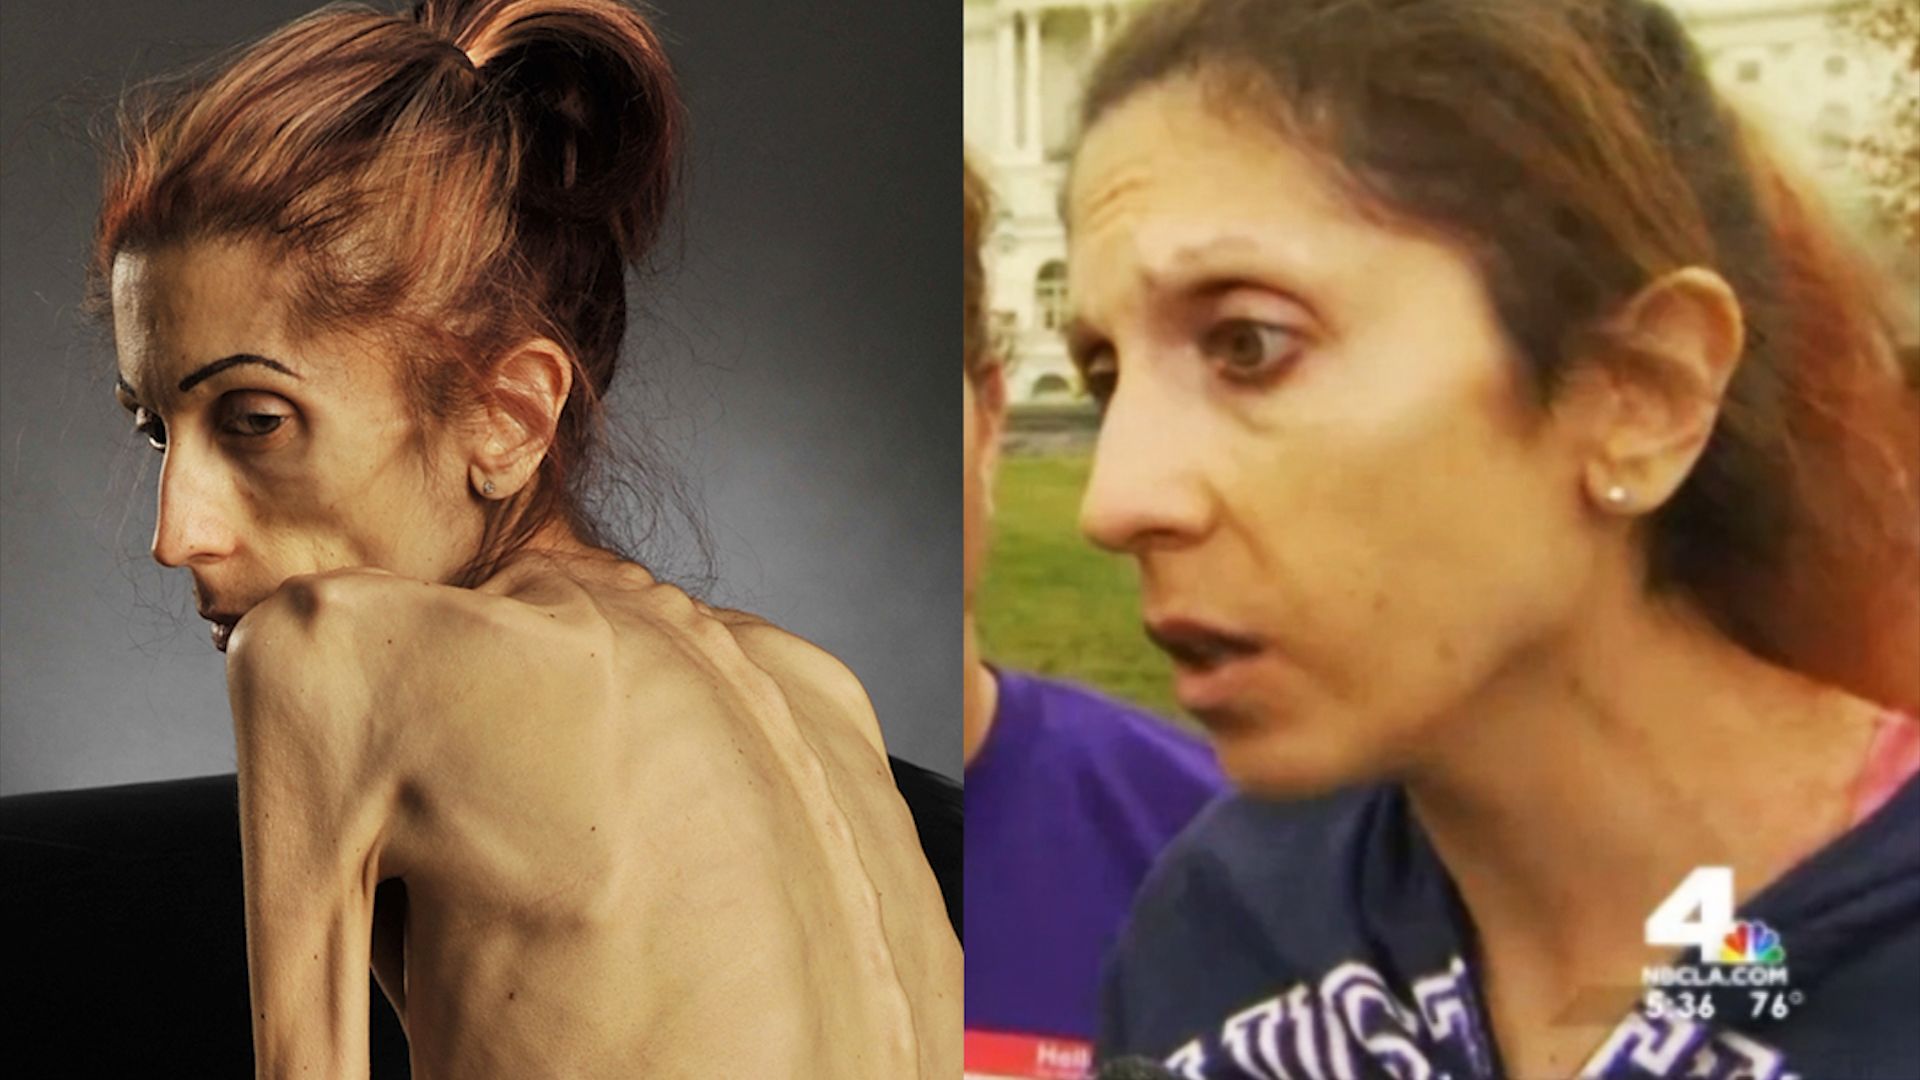 Rachael Farrokh winning battle against anorexia | CNN